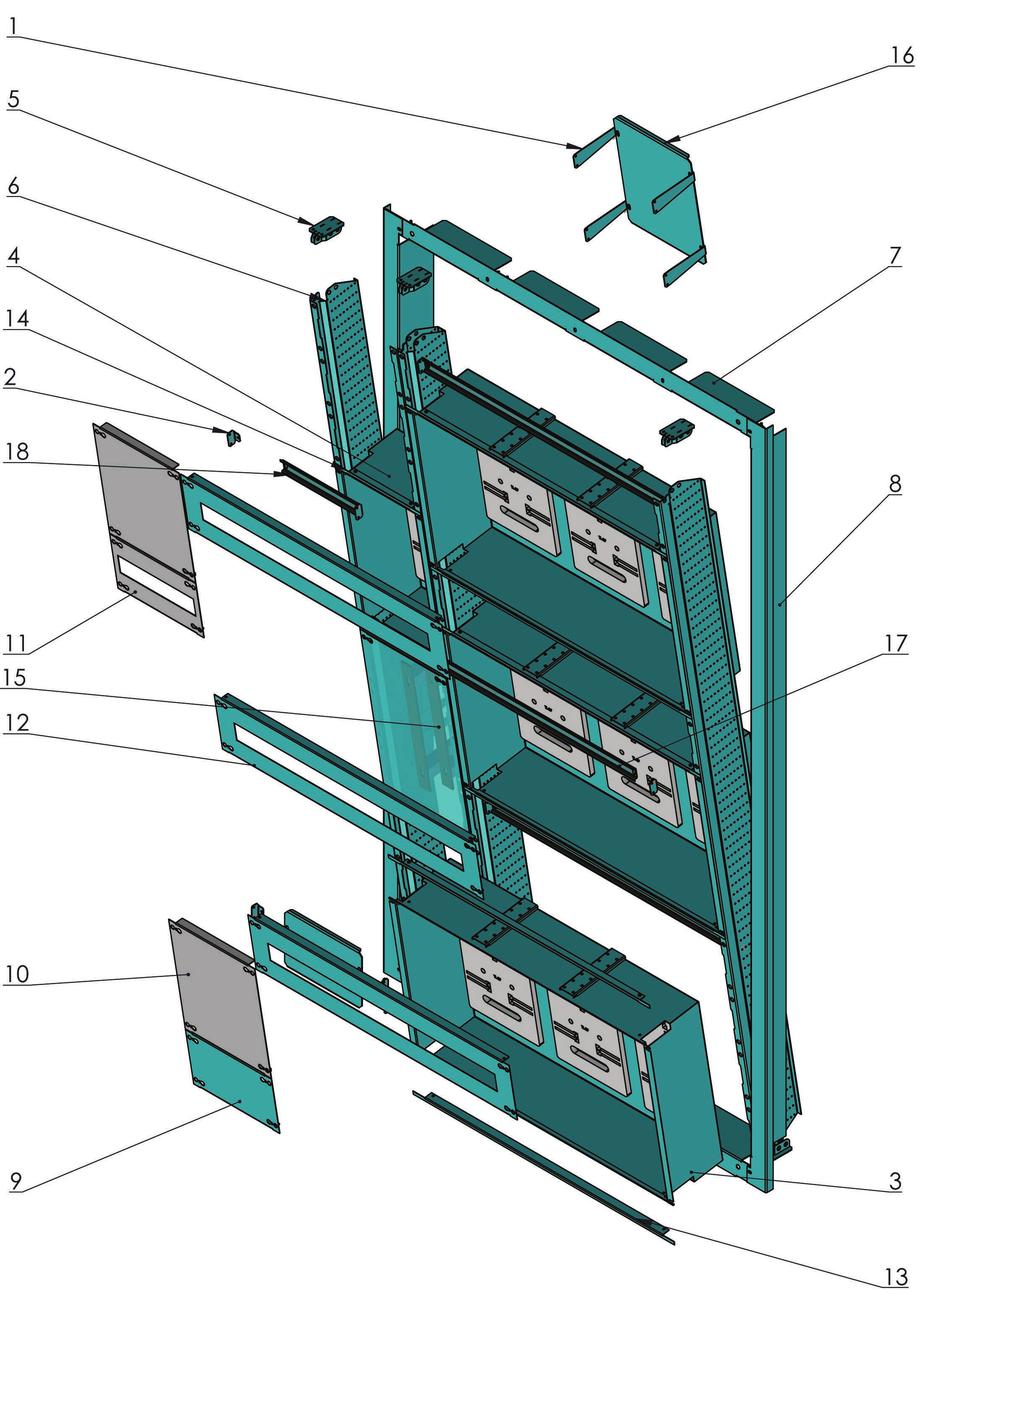 Przykładowa konﬁguracja Przykładowa konfiguracja Szafa HD9 (9) - przedział licznikowy: - 9 liczników trójfazowych - możliwość zabudowy modułowej 6 S - przedział rozdziału mocy - trzy